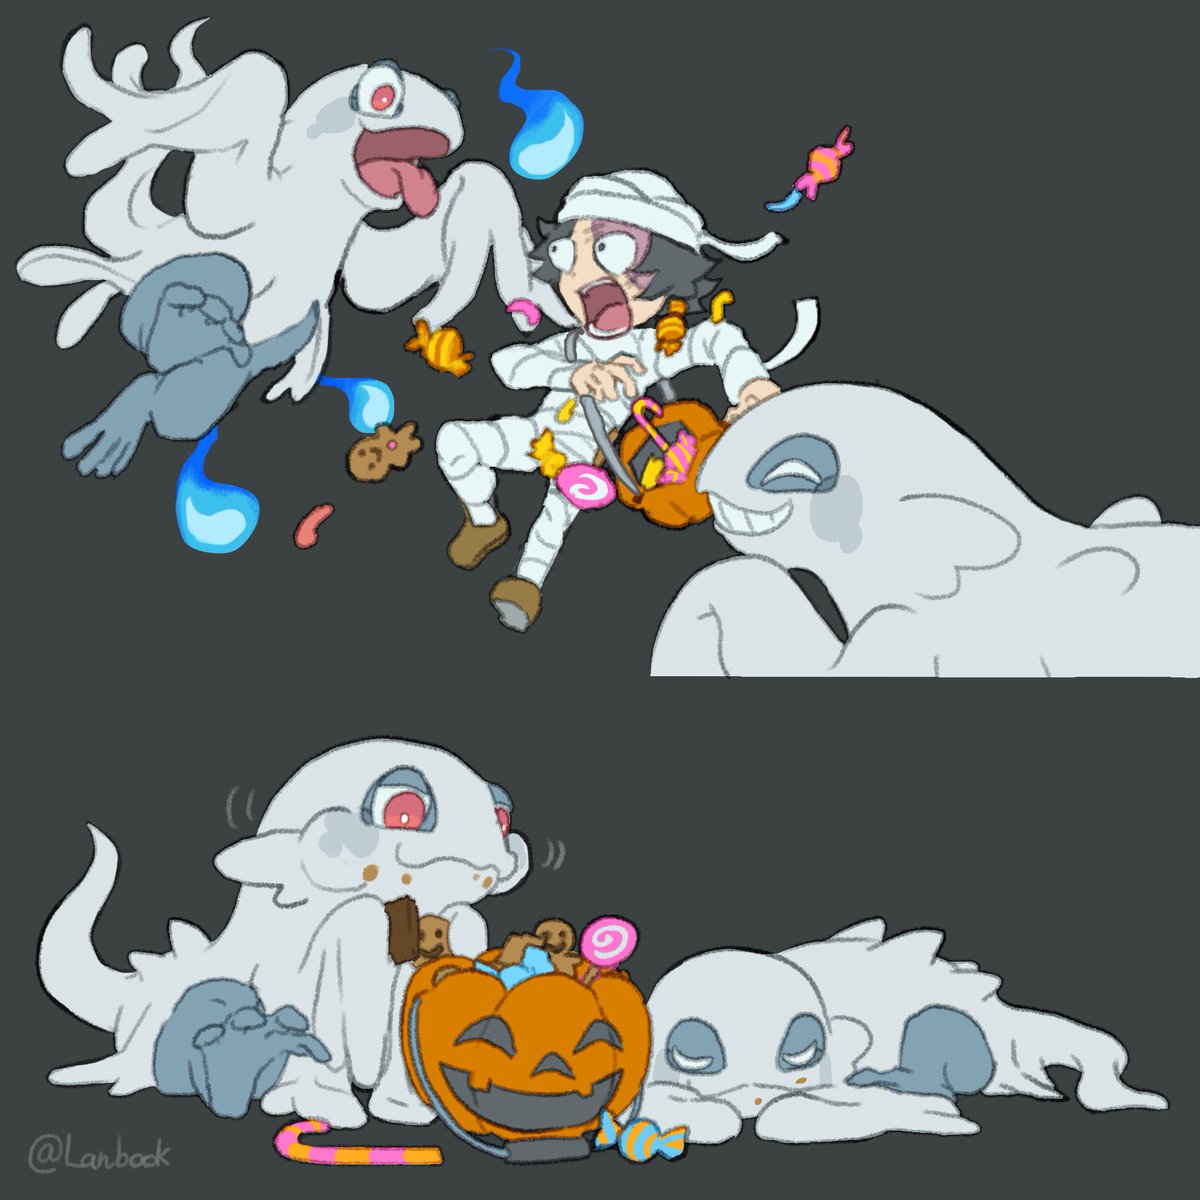 「オバケなヤモリ??
Ghost Gecko
#ハロウィン  #Halloween」|欄外@B-Worldドラゴンズ4話のイラスト